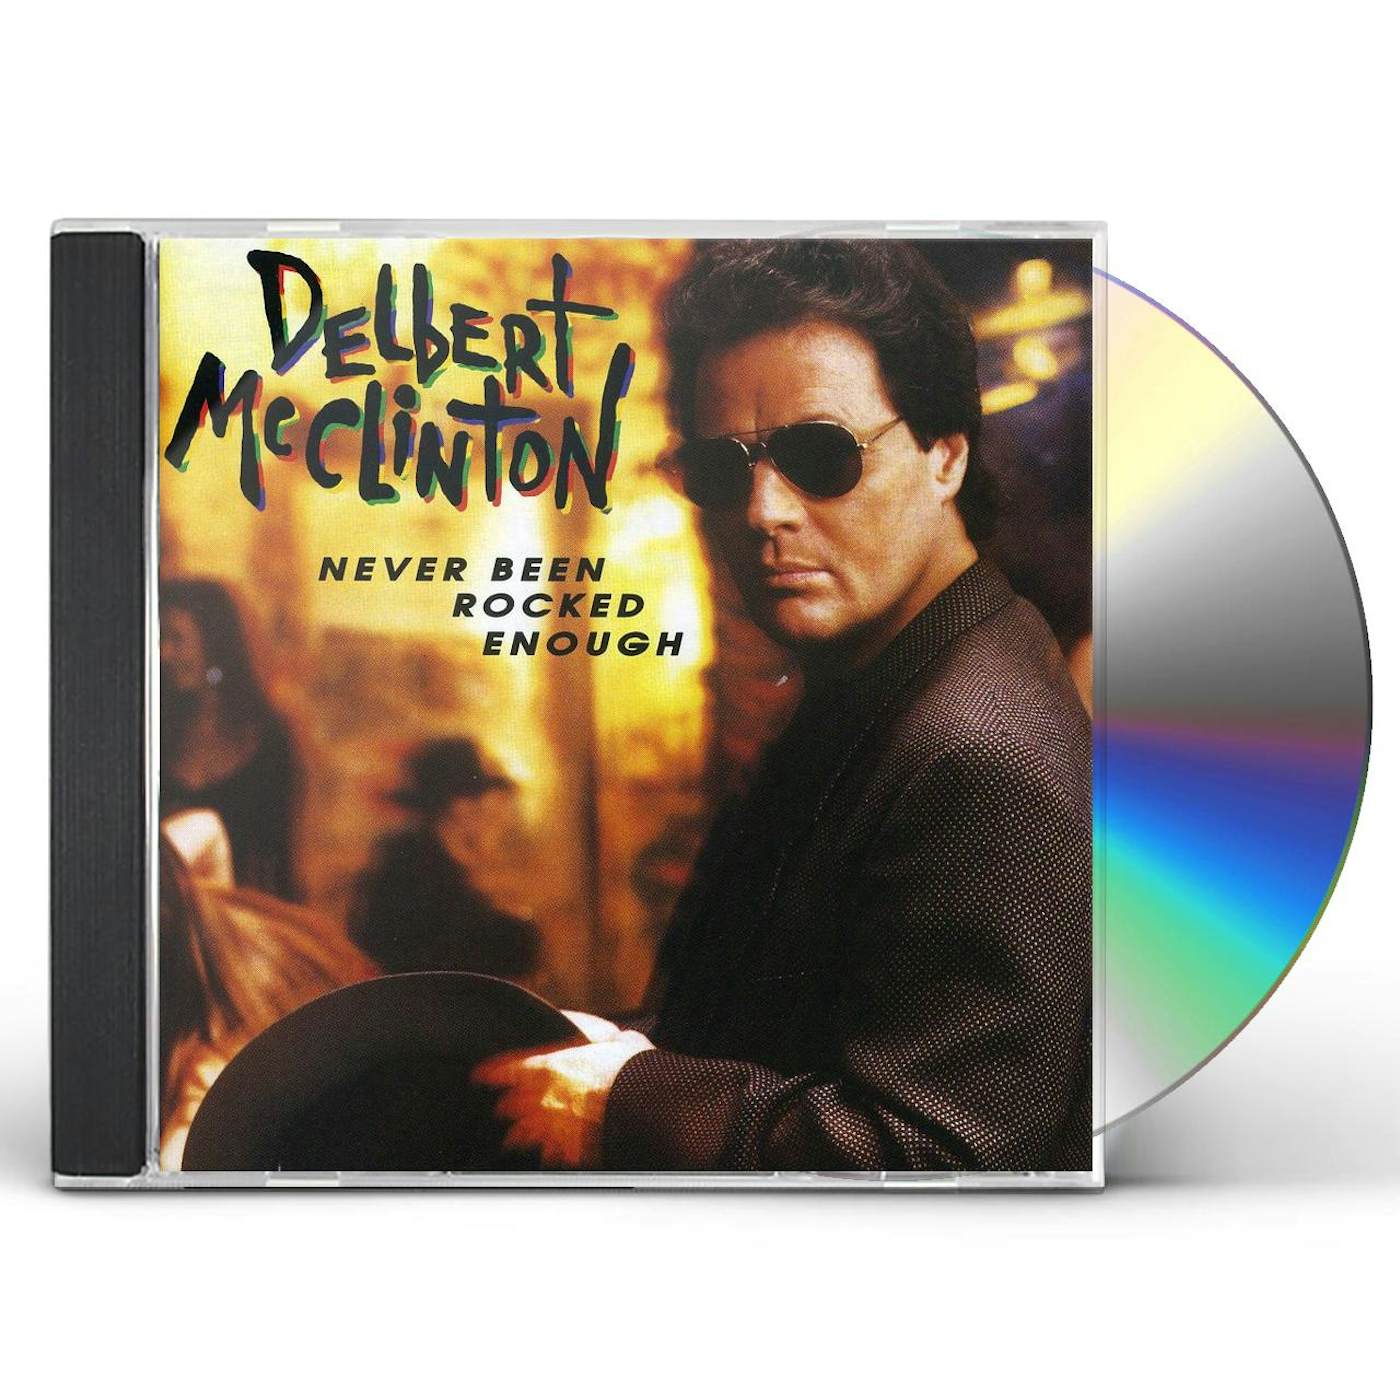 Delbert McClinton NEVER BEEN ROCKED ENOUGH CD